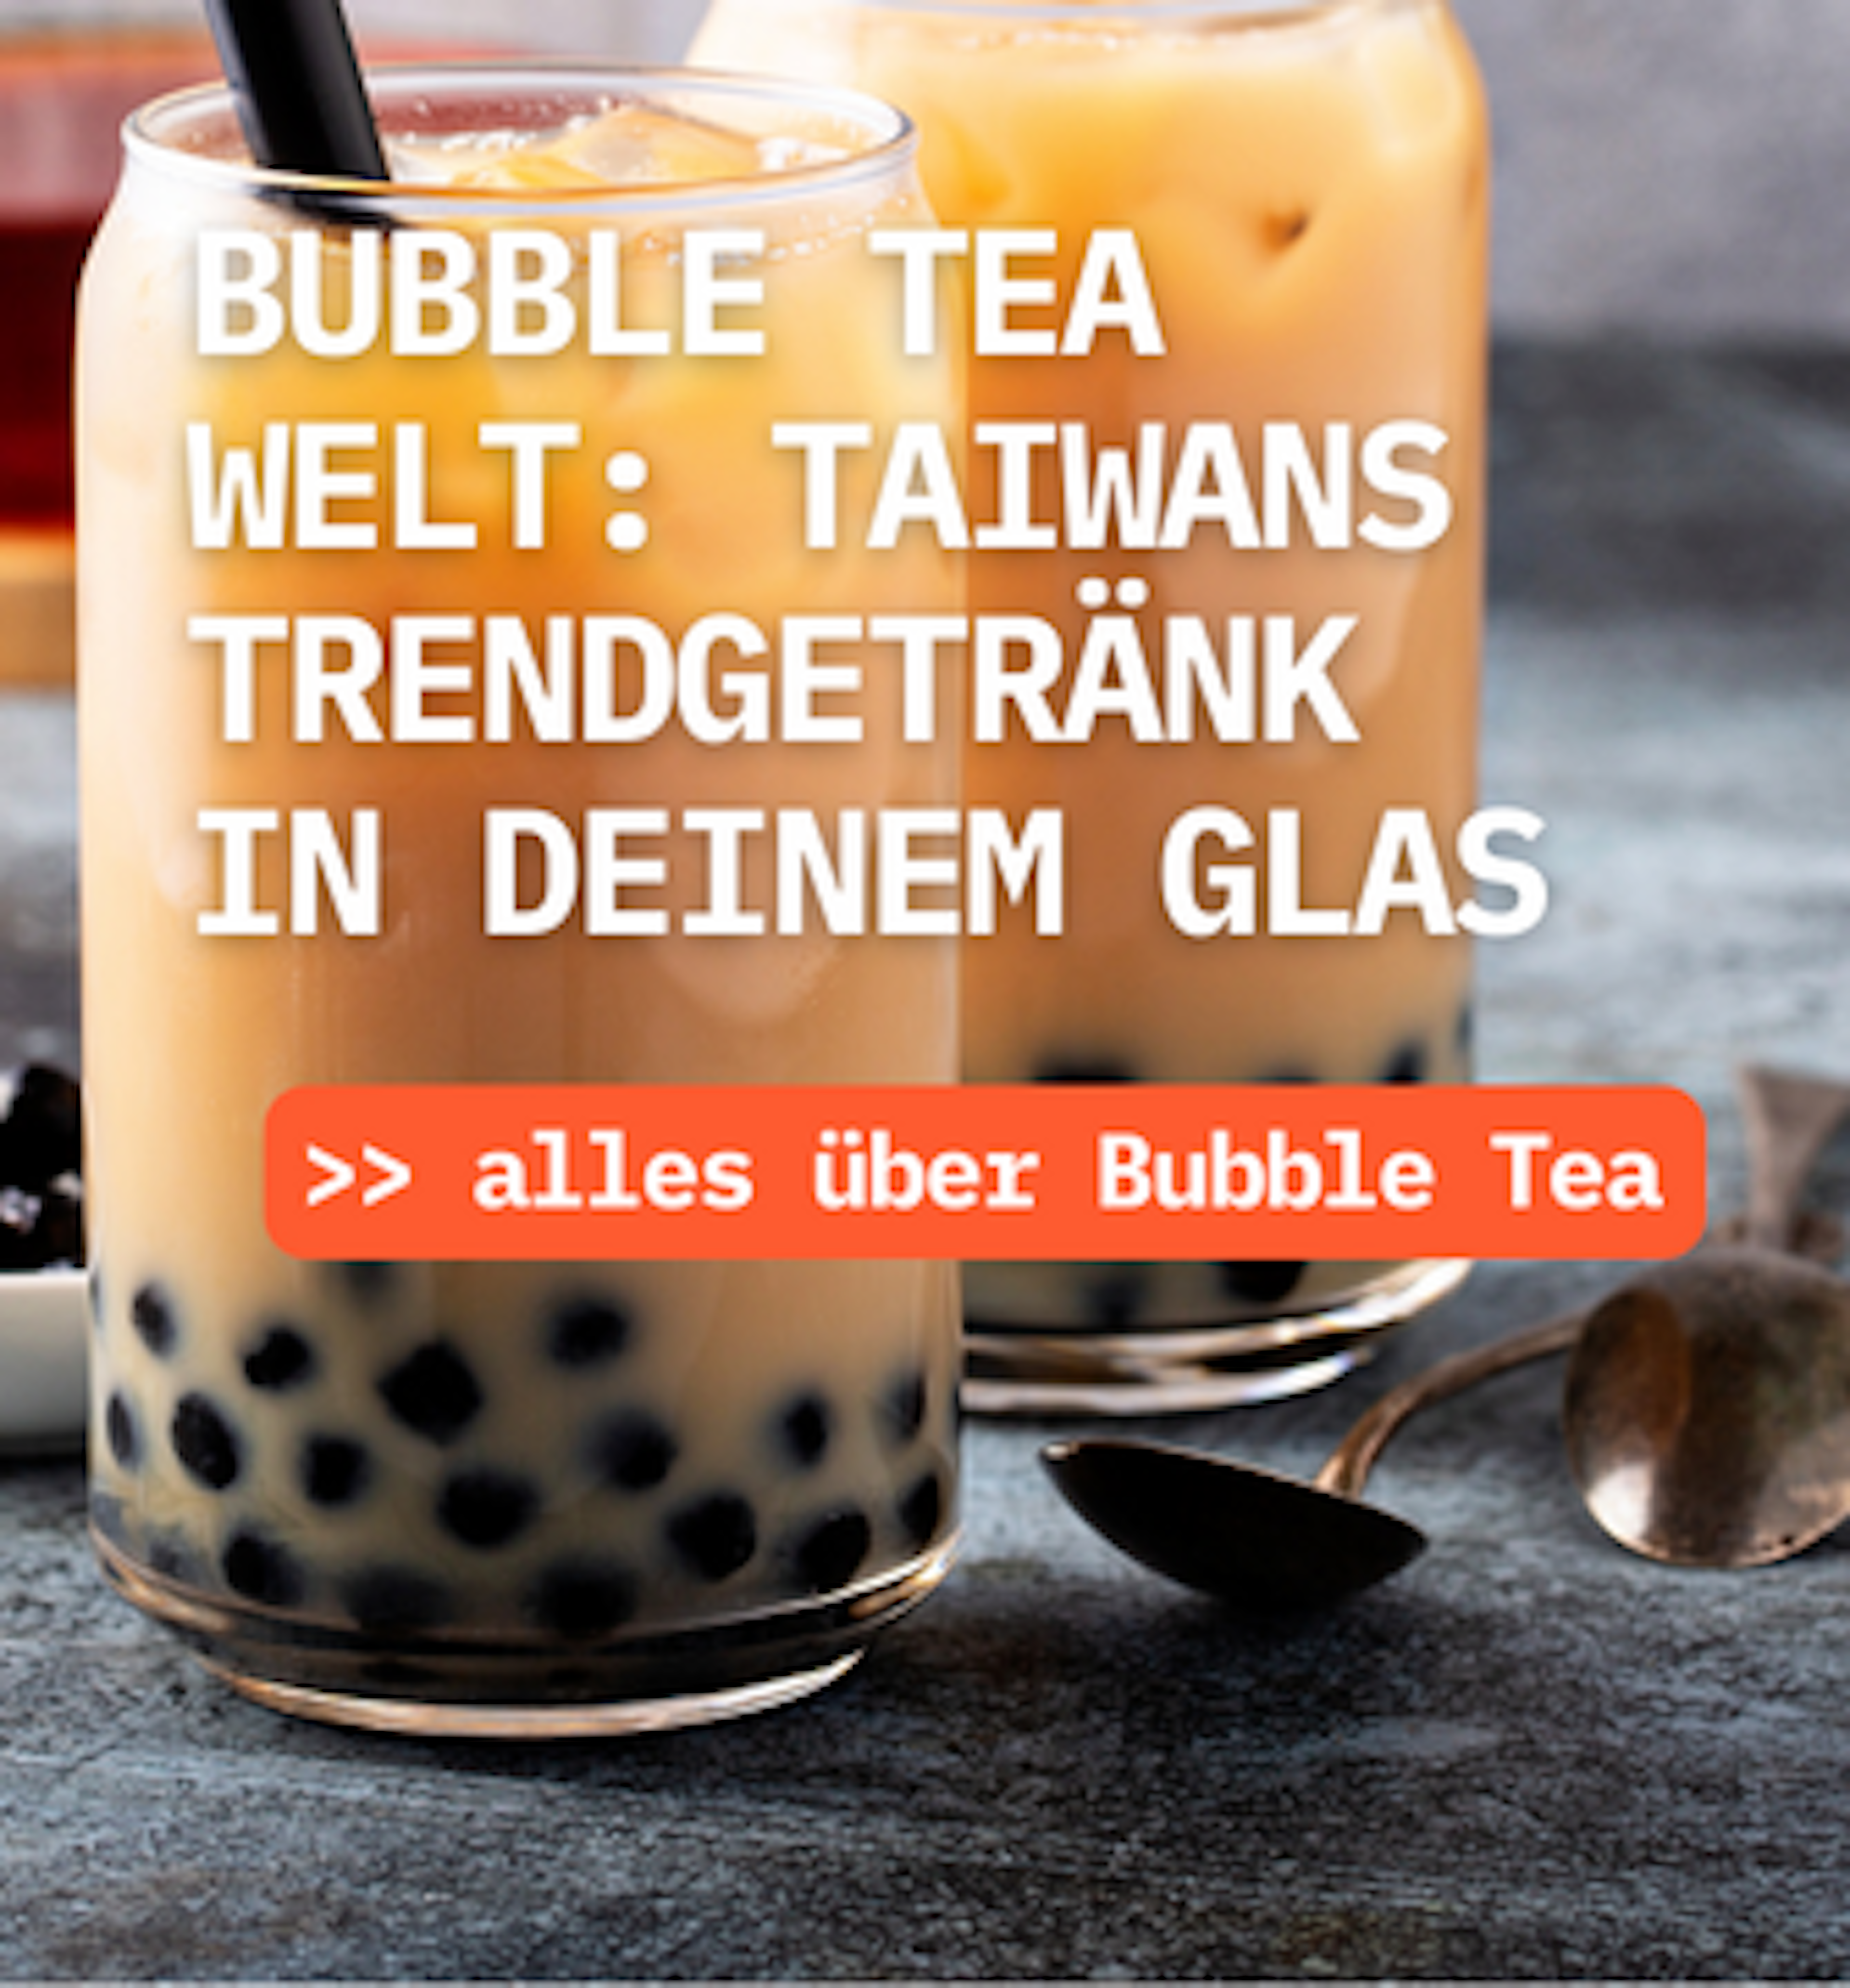 😄 Wie wäre es jetzt mit einem Blick auf unser Bubble Tea-Sortiment?